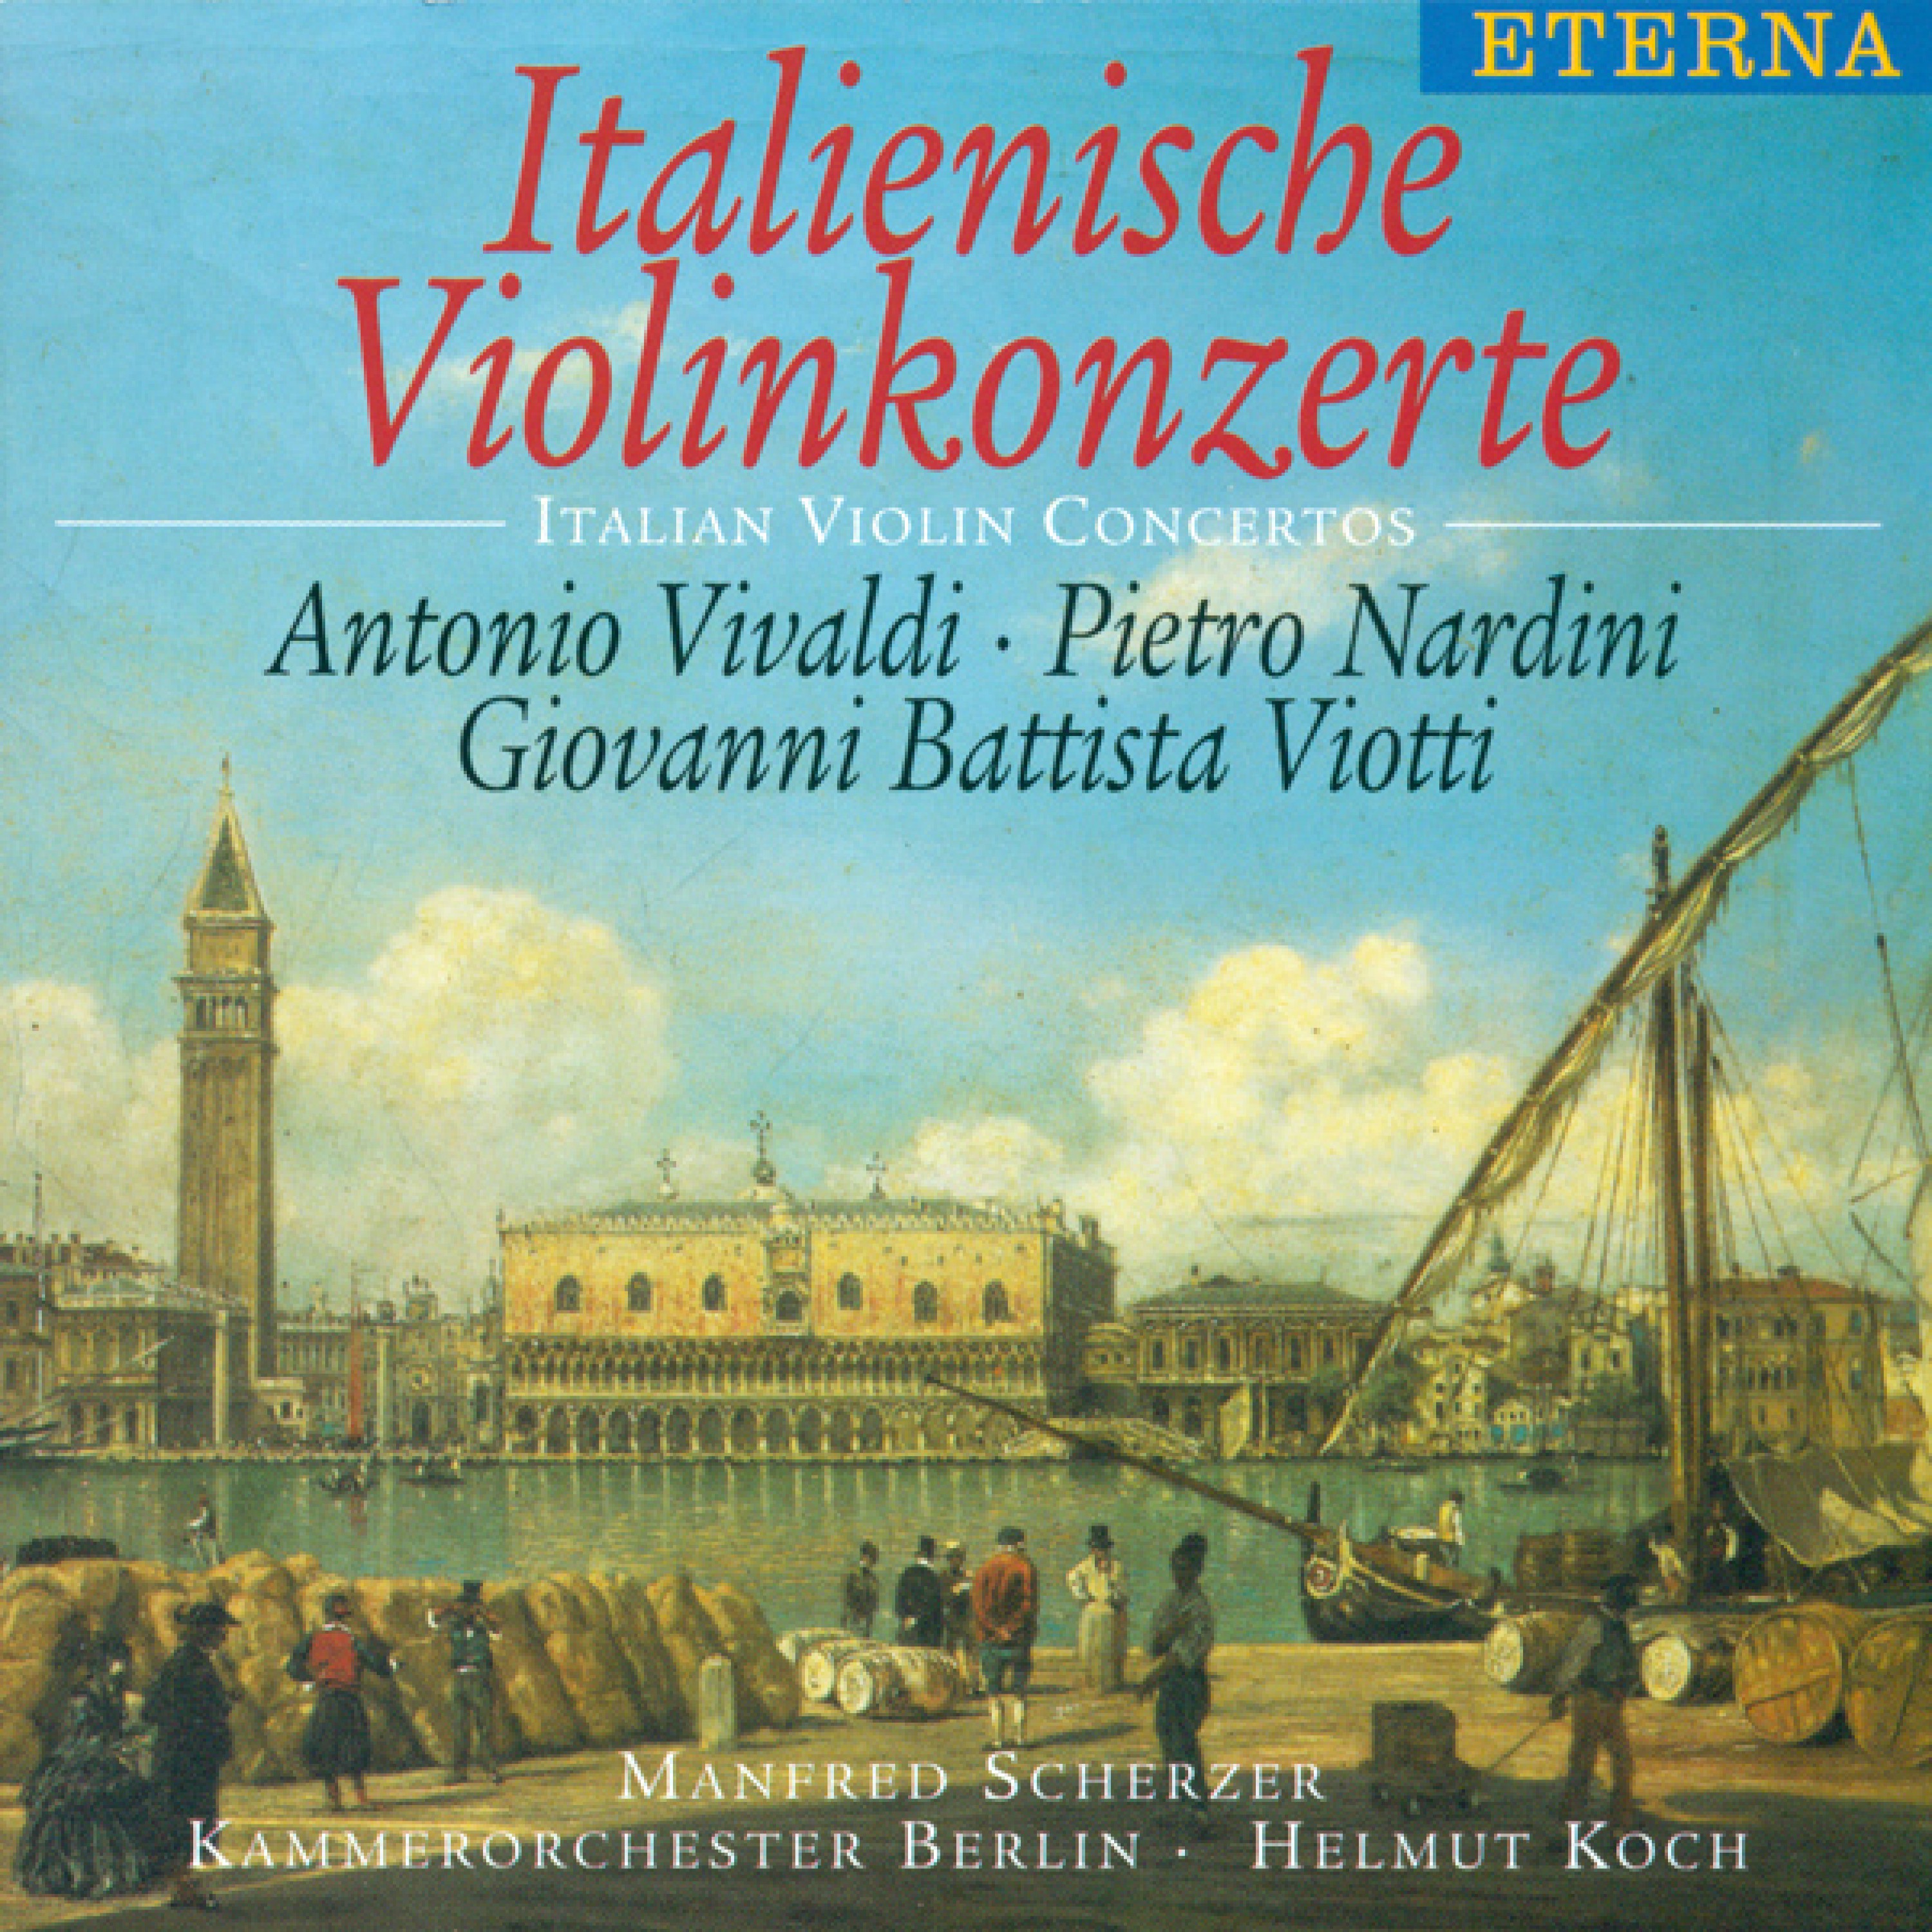 Violin Concerto in E Minor: II. Andante cantabile